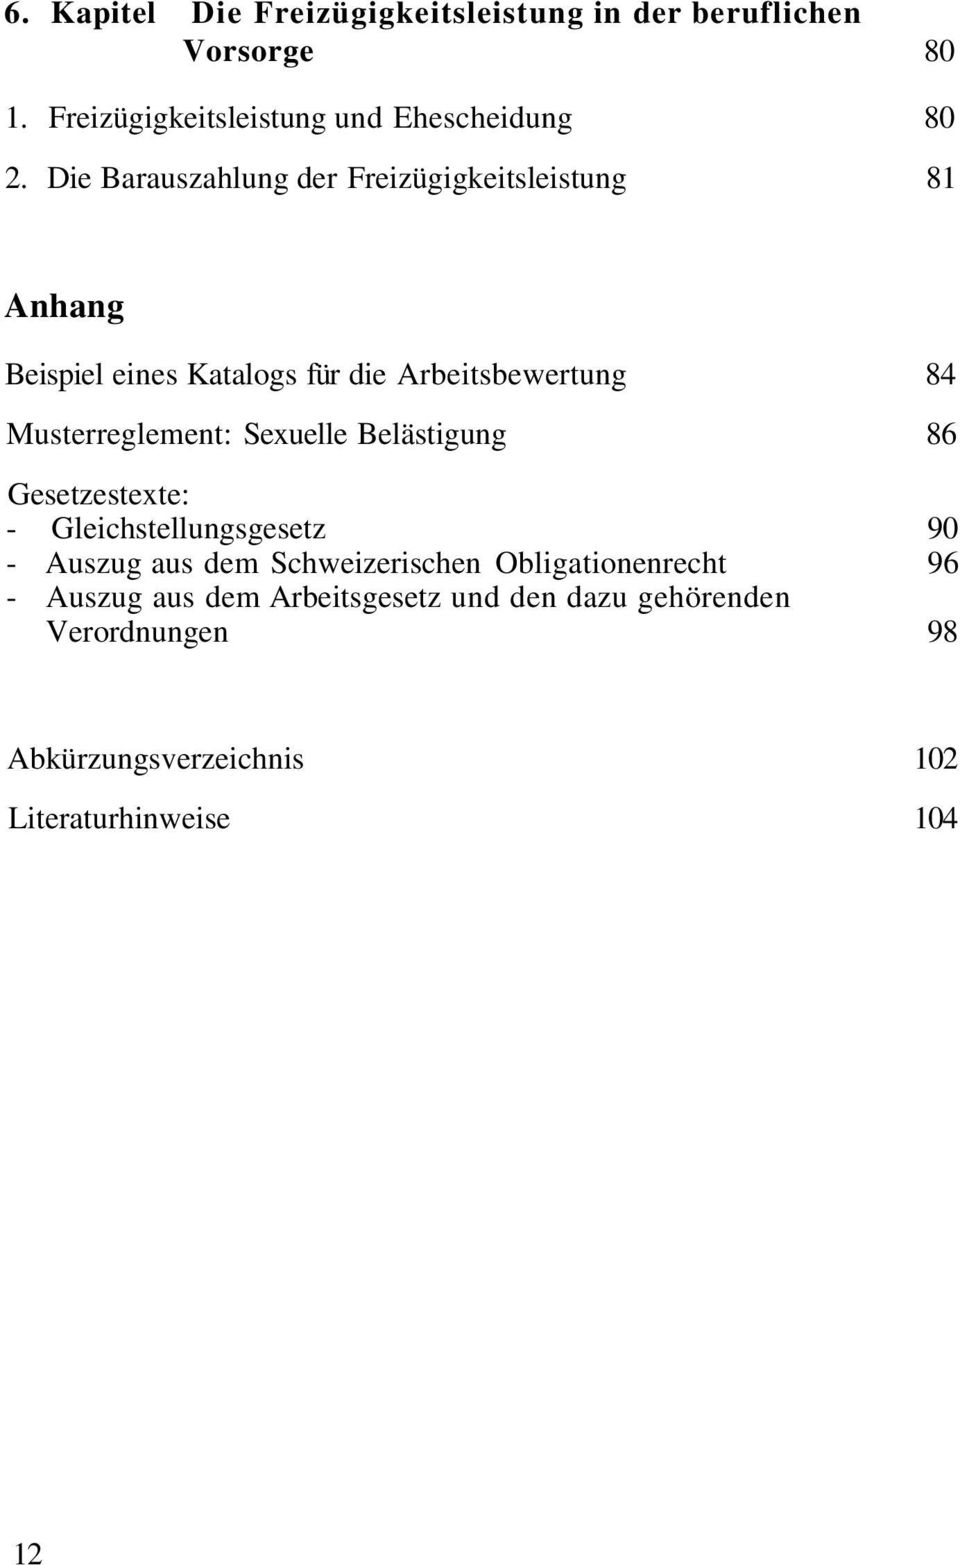 Musterreglement: Sexuelle Belästigung 86 Gesetzestexte: - Gleichstellungsgesetz 90 - Auszug aus dem Schweizerischen